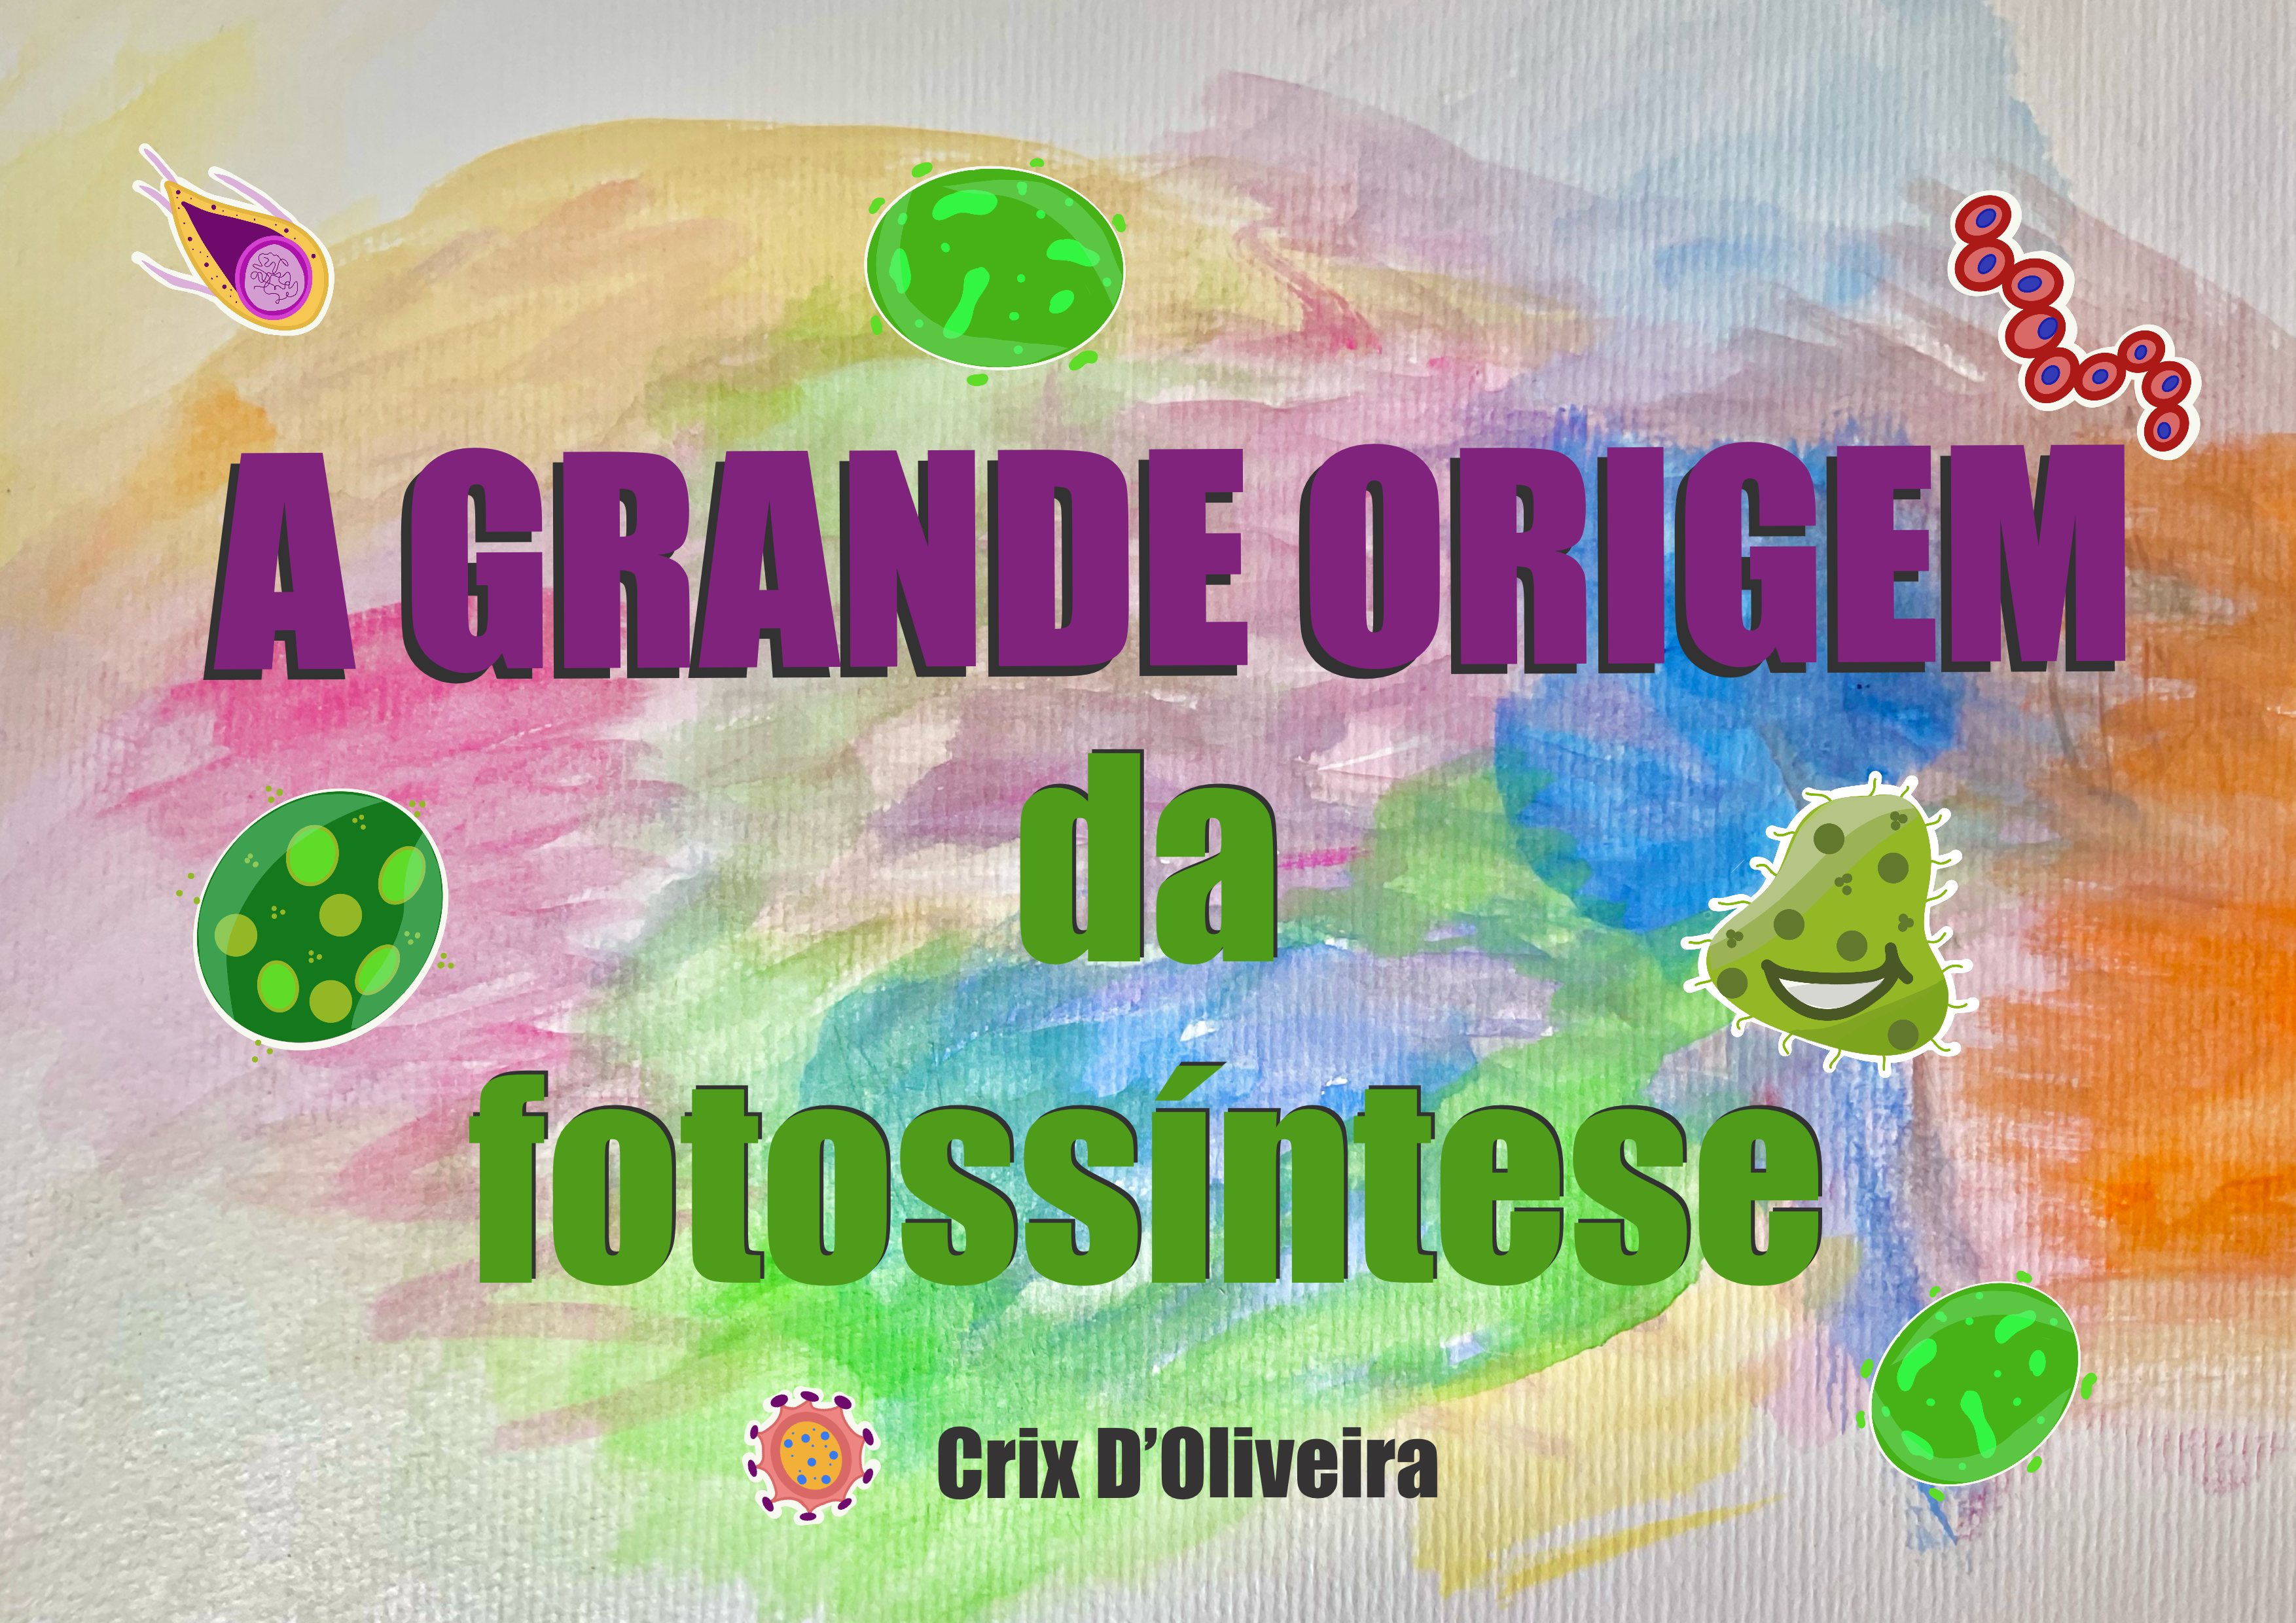 Capa do livro A Grande Origem da Fotossintese, fundo colorido em aquarela, com o título aparecendo em cores roxa e verde, juntamente com o nome da autora, Crix D'Oliveira. Na imagem também aparecem algumas bactérias ilustradas.